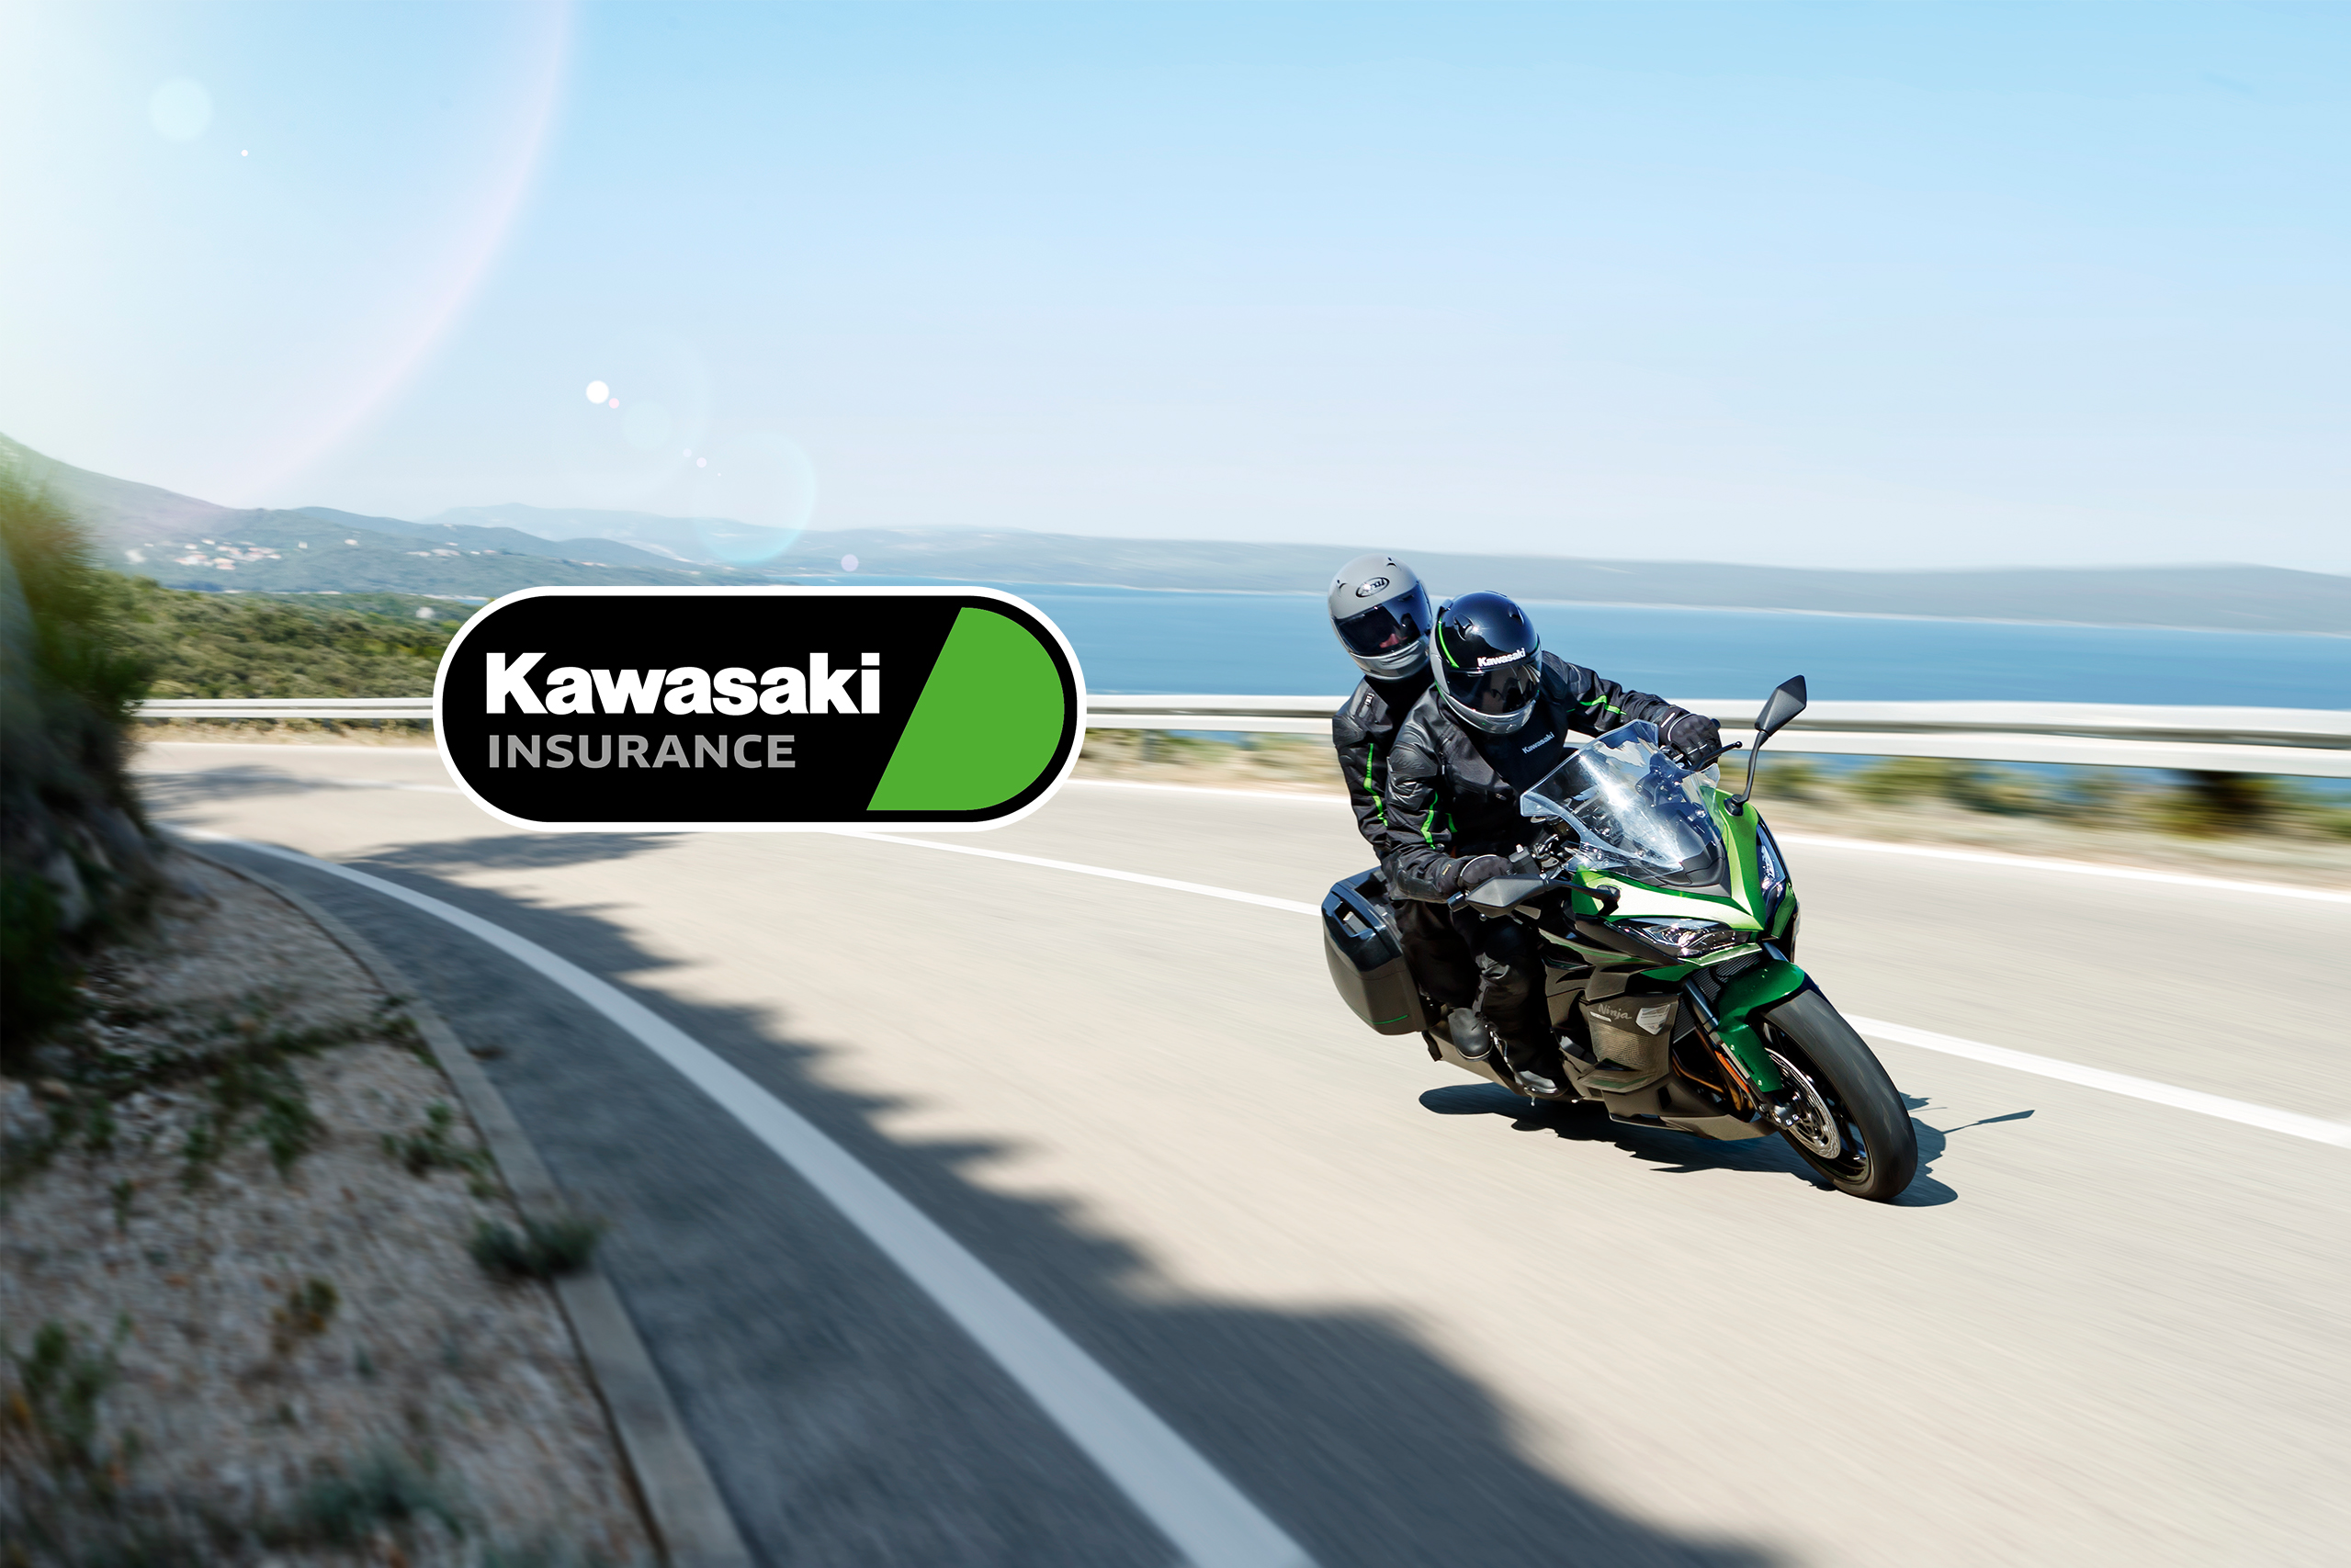 Kawasaki Insurance